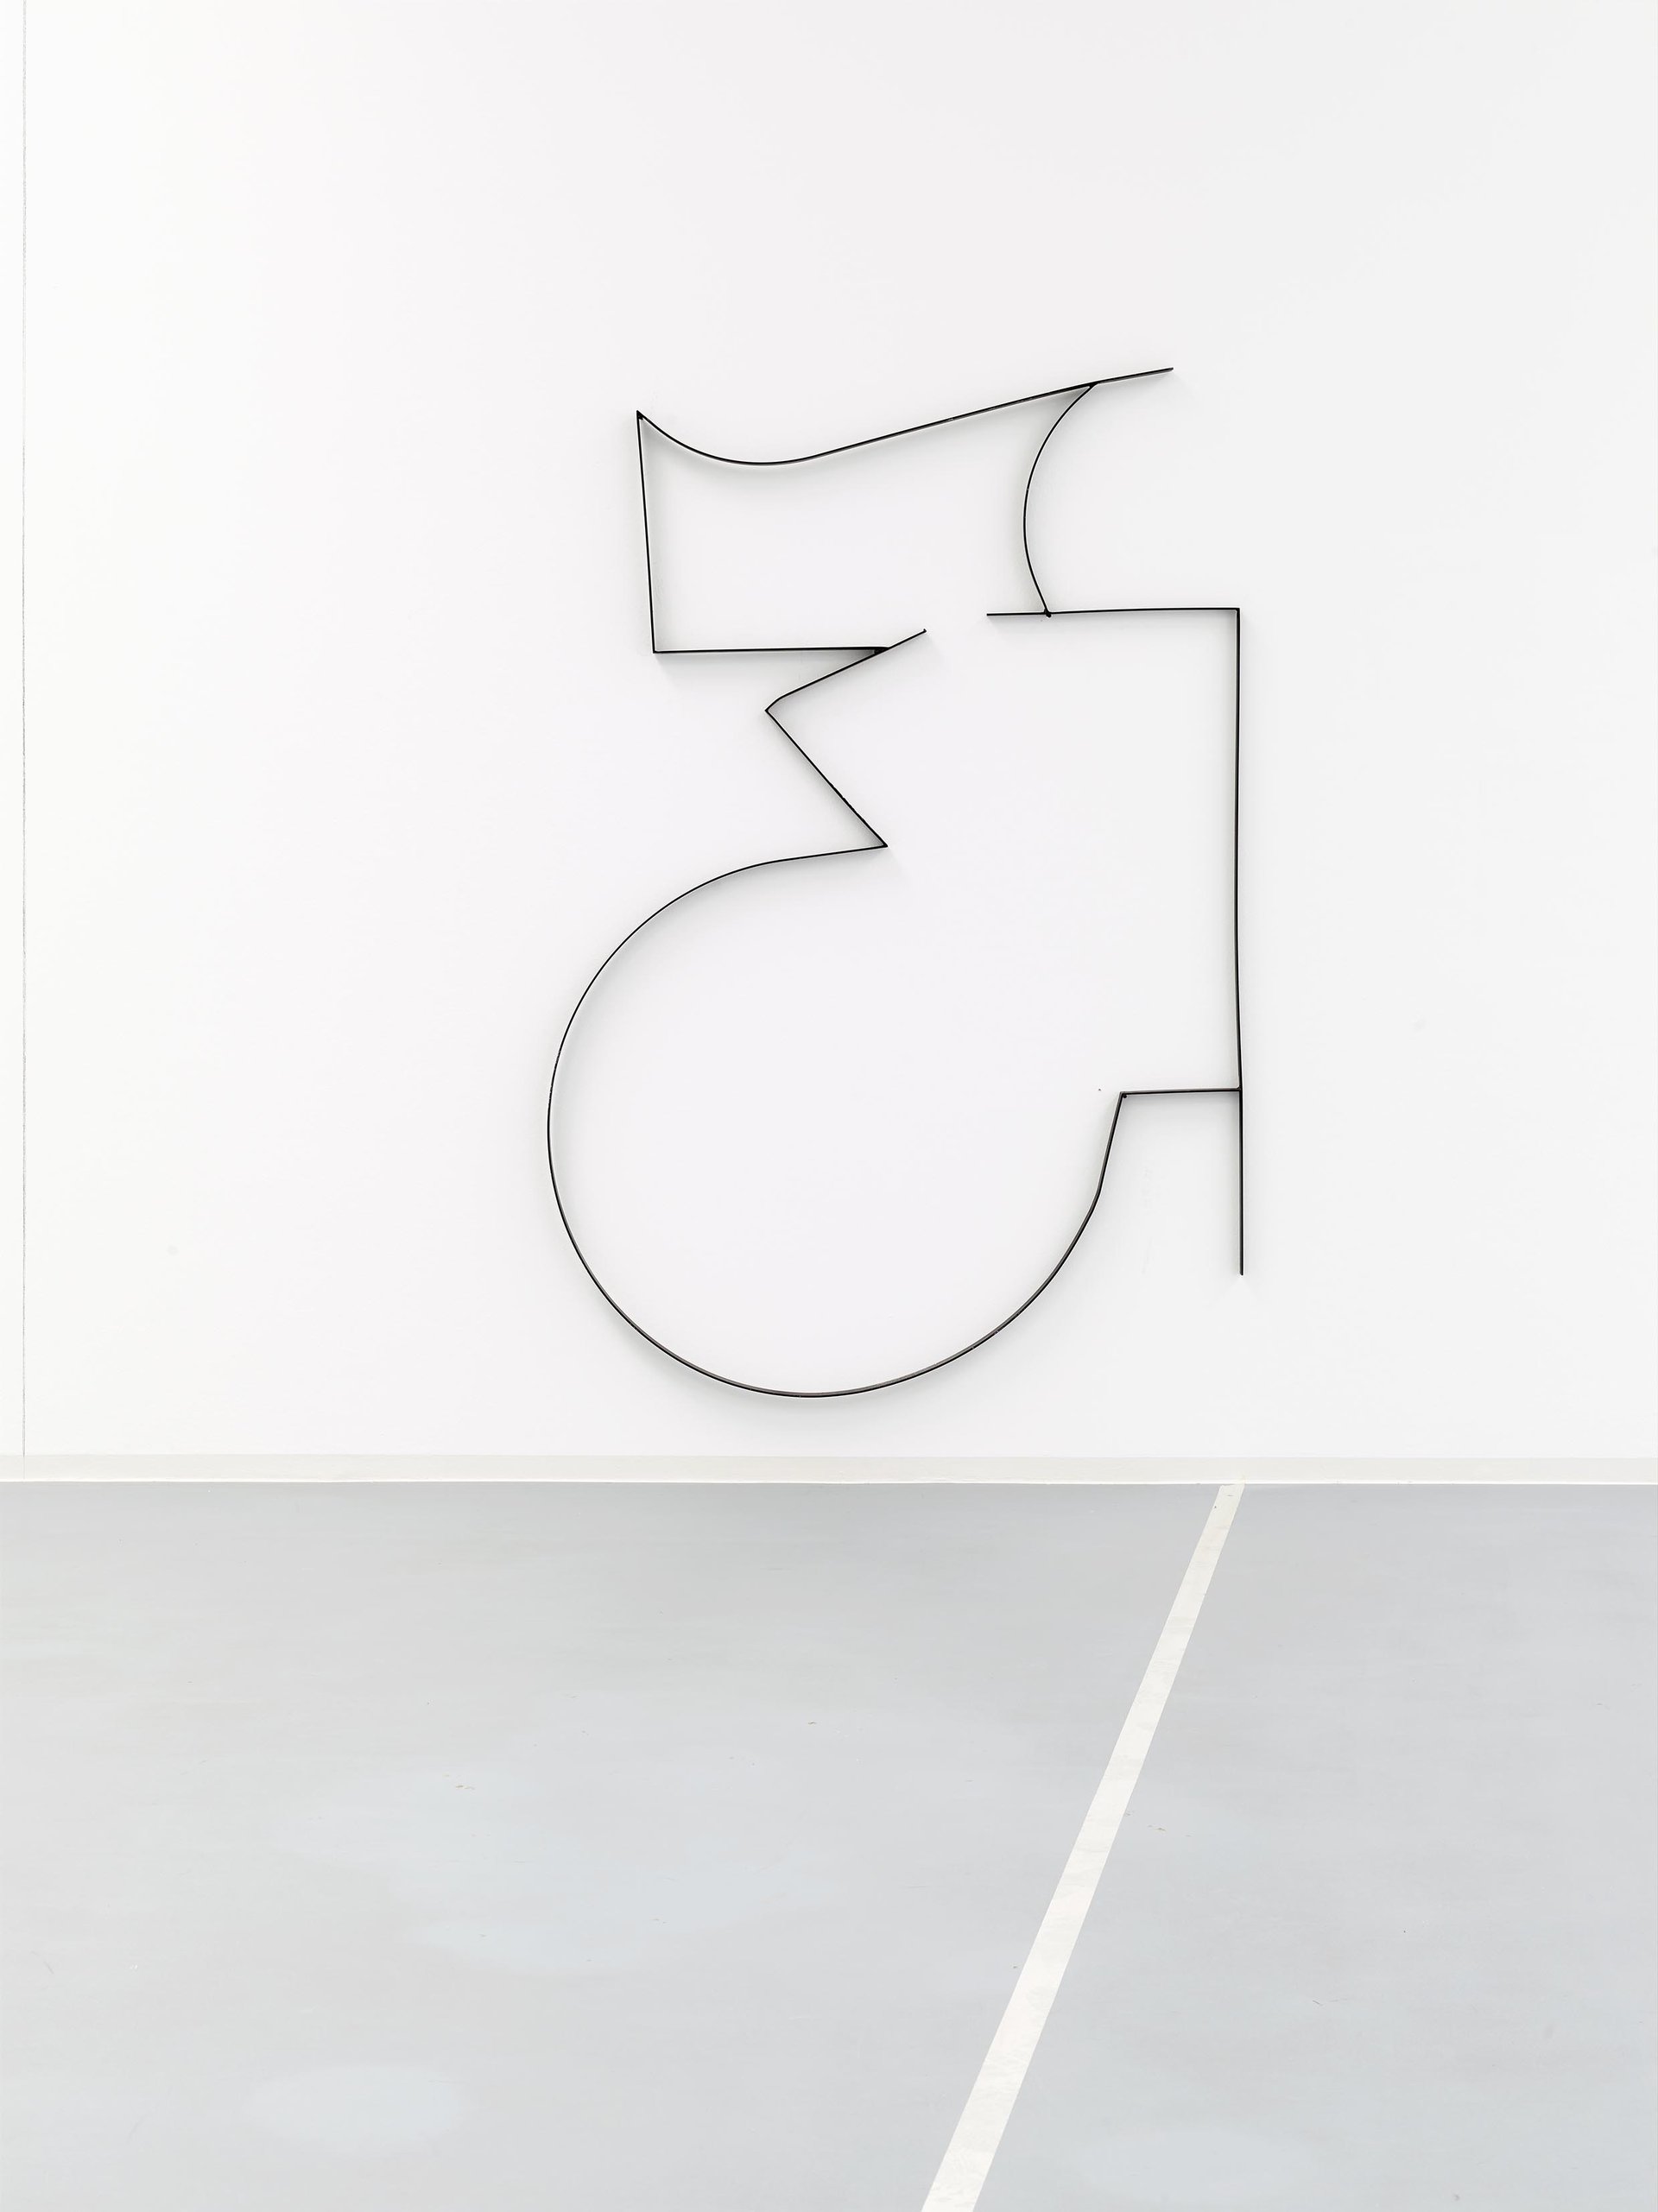 Jonathan Binet, Drawing 4, 2015, Installationsansicht, 2015, Bonner Kunstverein, Courtesy der Künstler und Gaudel de Stampa, Paris. Photo: Simon Vogel